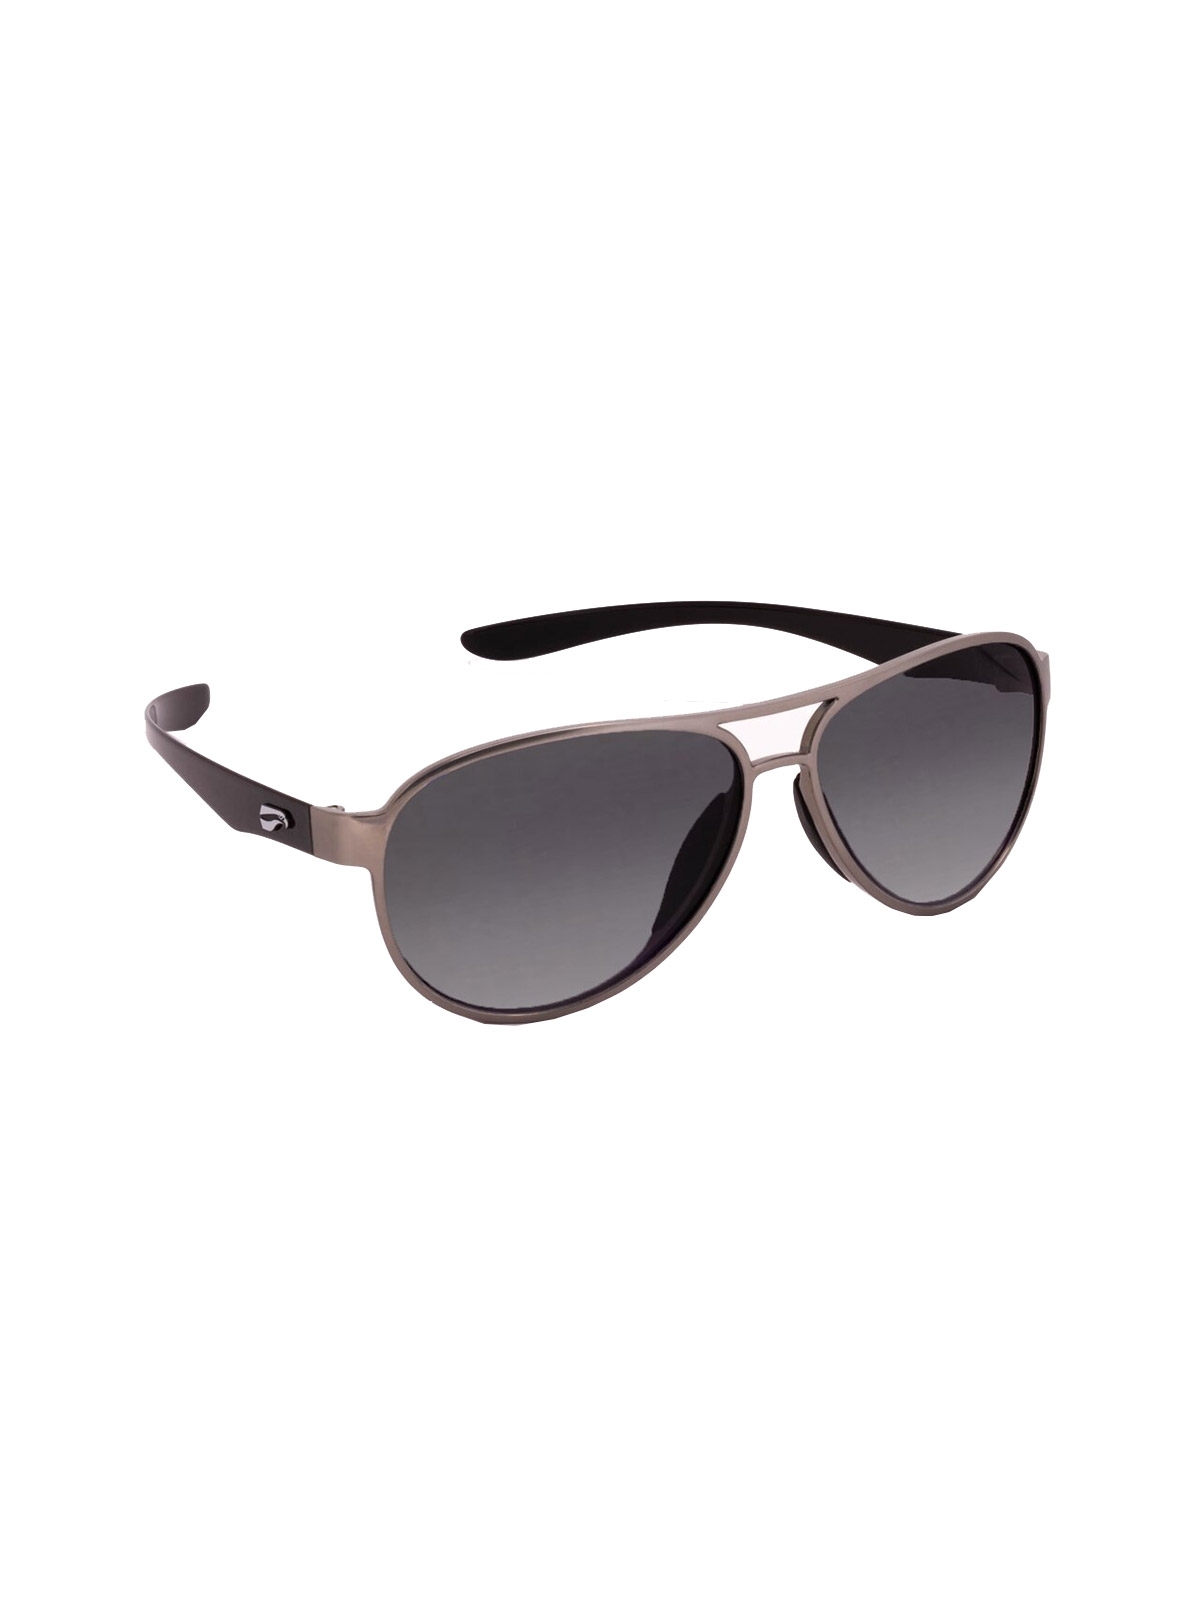 Flying Eyes Sunglasses Kestrel Aviator - Silver Front Frame, Gradient Gray Lenses